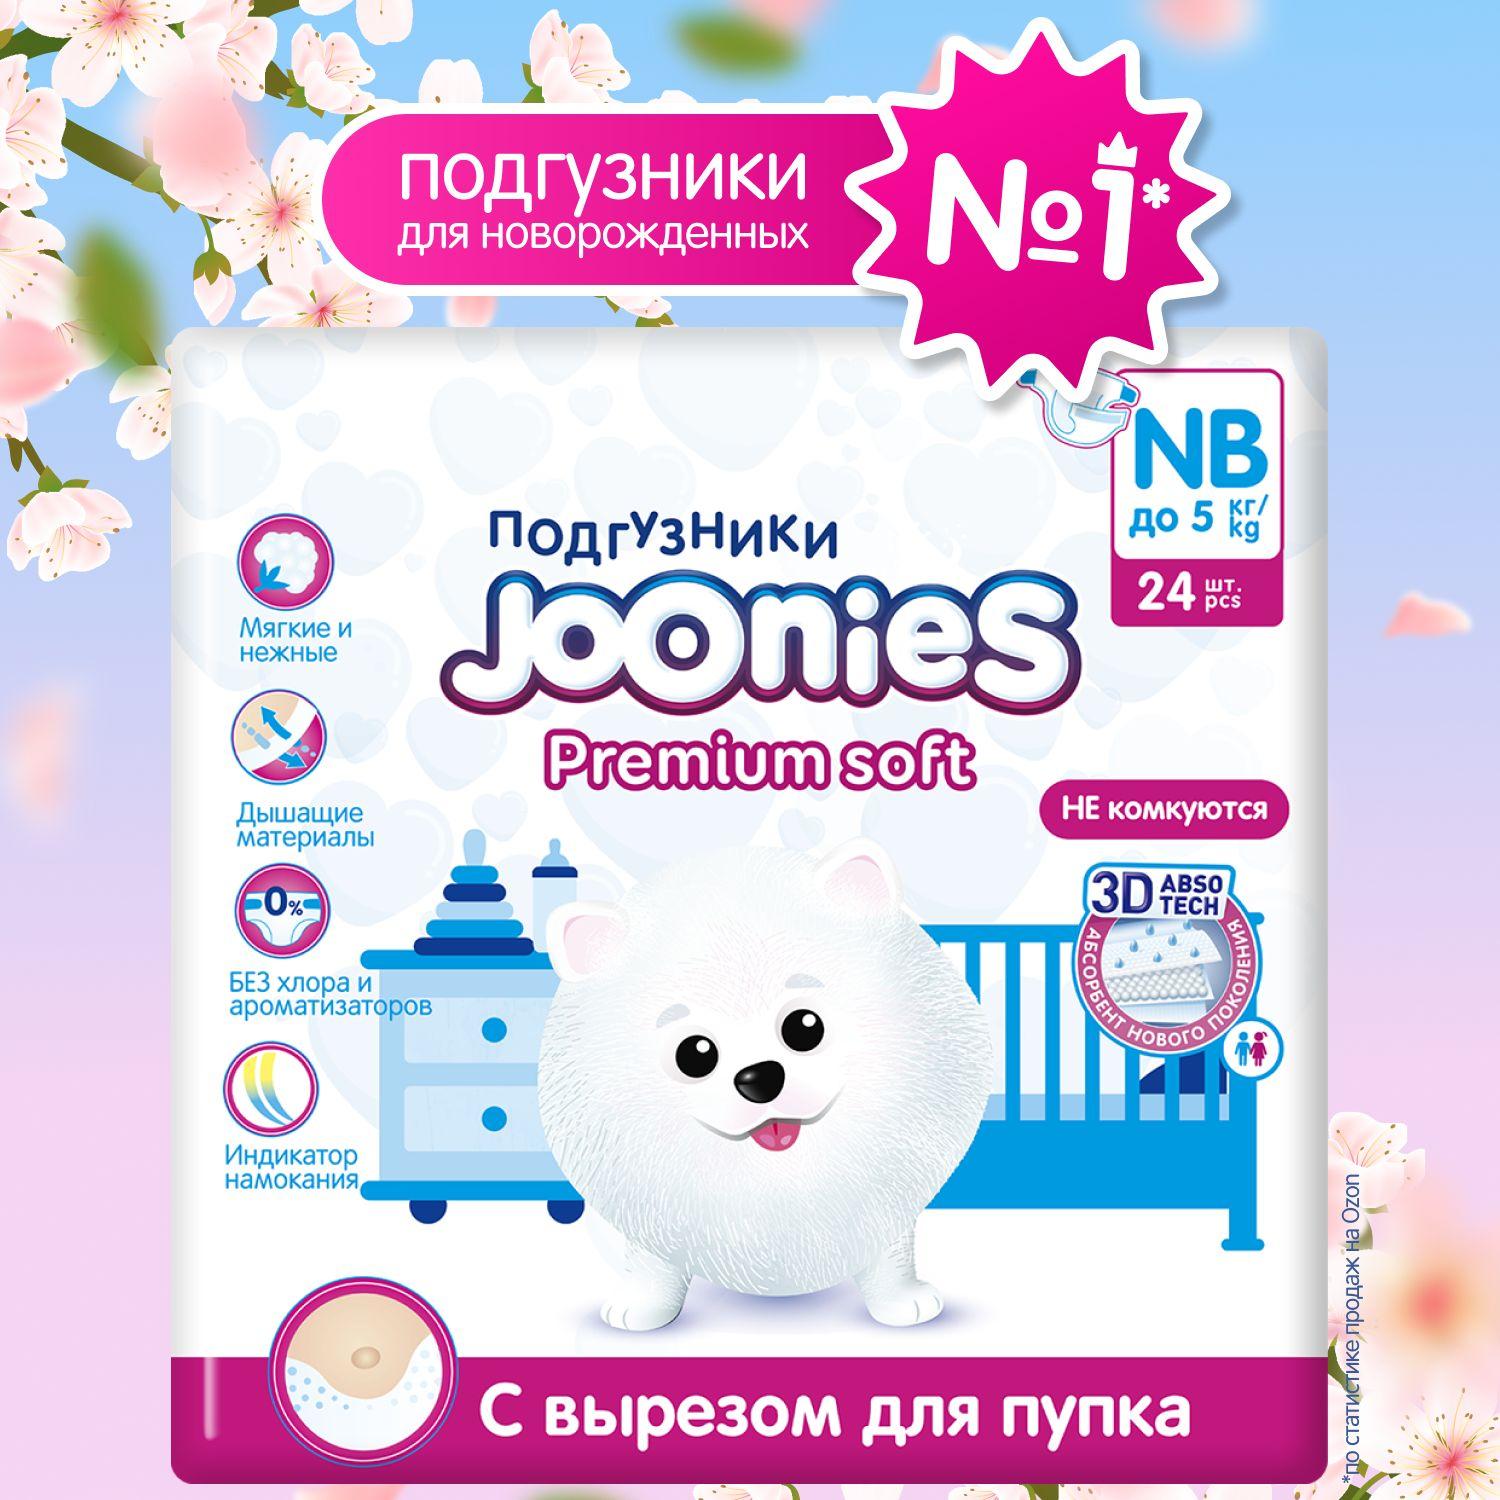 JOONIES Premium Soft Подгузники для новорожденных, размер NB (0-5 кг), 24 шт. ультра-тонкие, с вырезом под пупок